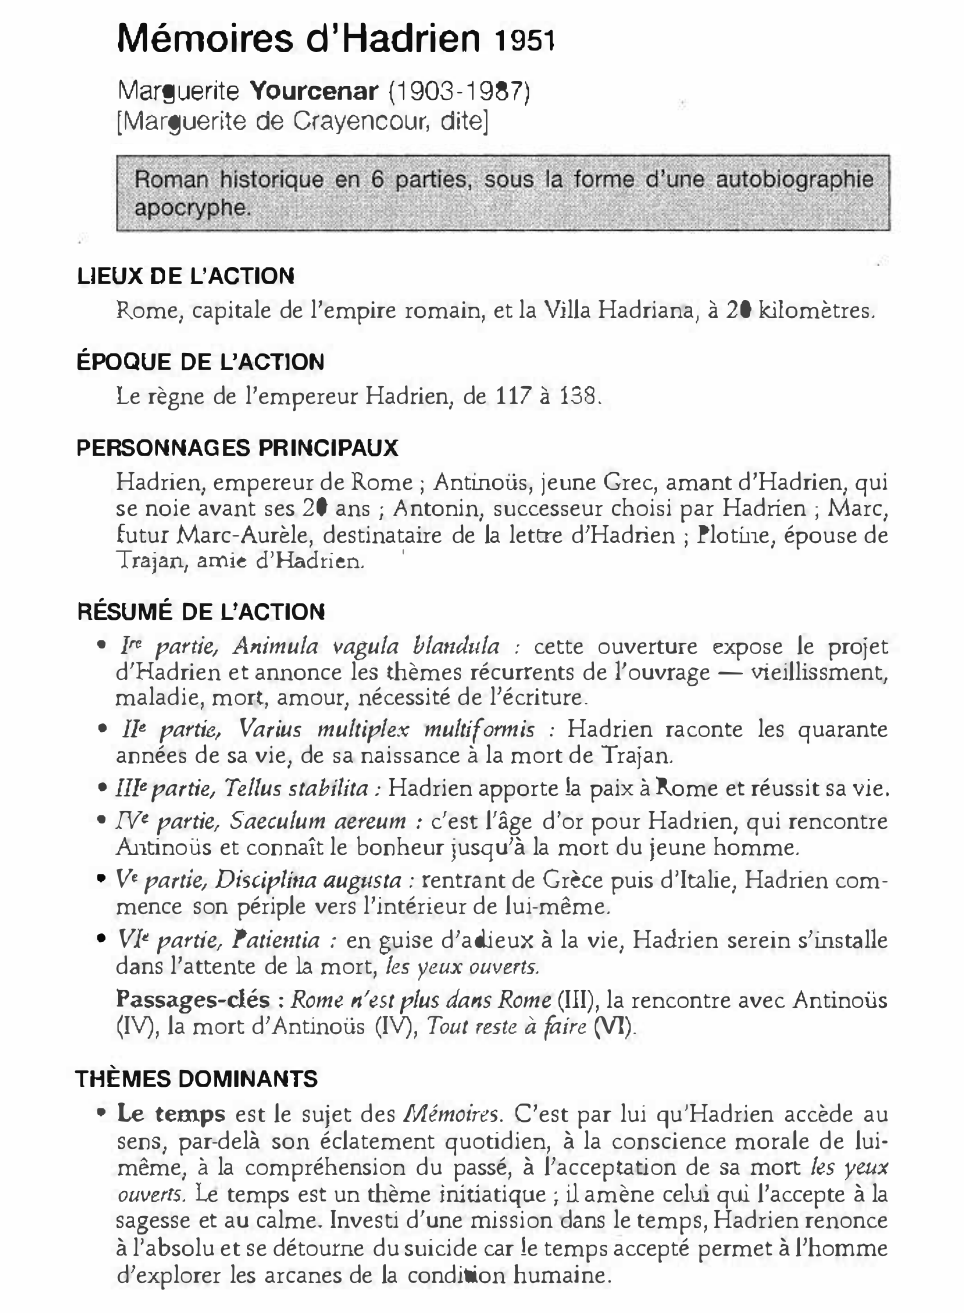 Prévisualisation du document MÉMOIRES D’HADRIEN de Marguerite Yourcenar (résumé)